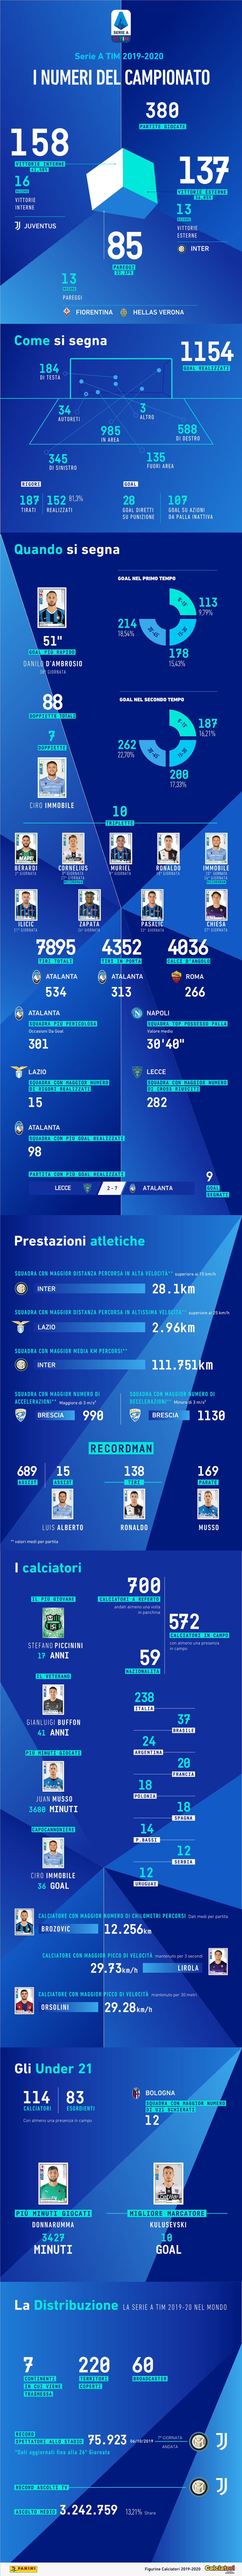 Serie a TIM 2019-2020